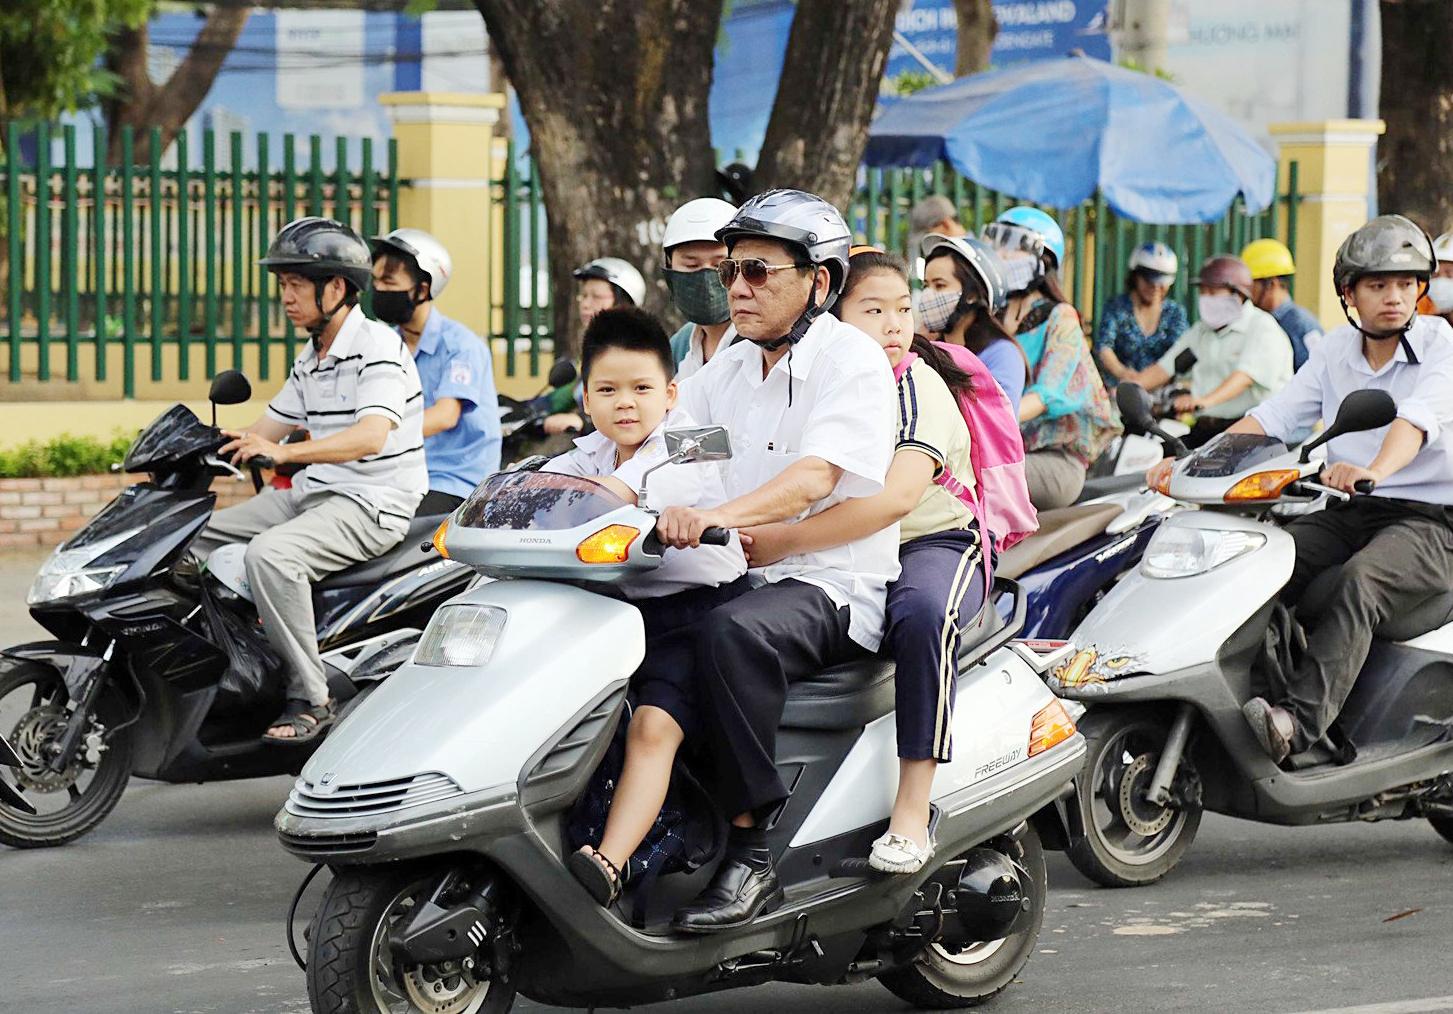 Xe máy là phương tiện giao thông hàng đầu ở Việt Nam. Và một trong những nguyên nhân chính của tai nạn giao thông là do không đội mũ bảo hiểm. Hãy bảo vệ mạng sống của mình và trẻ em bằng cách đội mũ bảo hiểm khi tham gia giao thông.